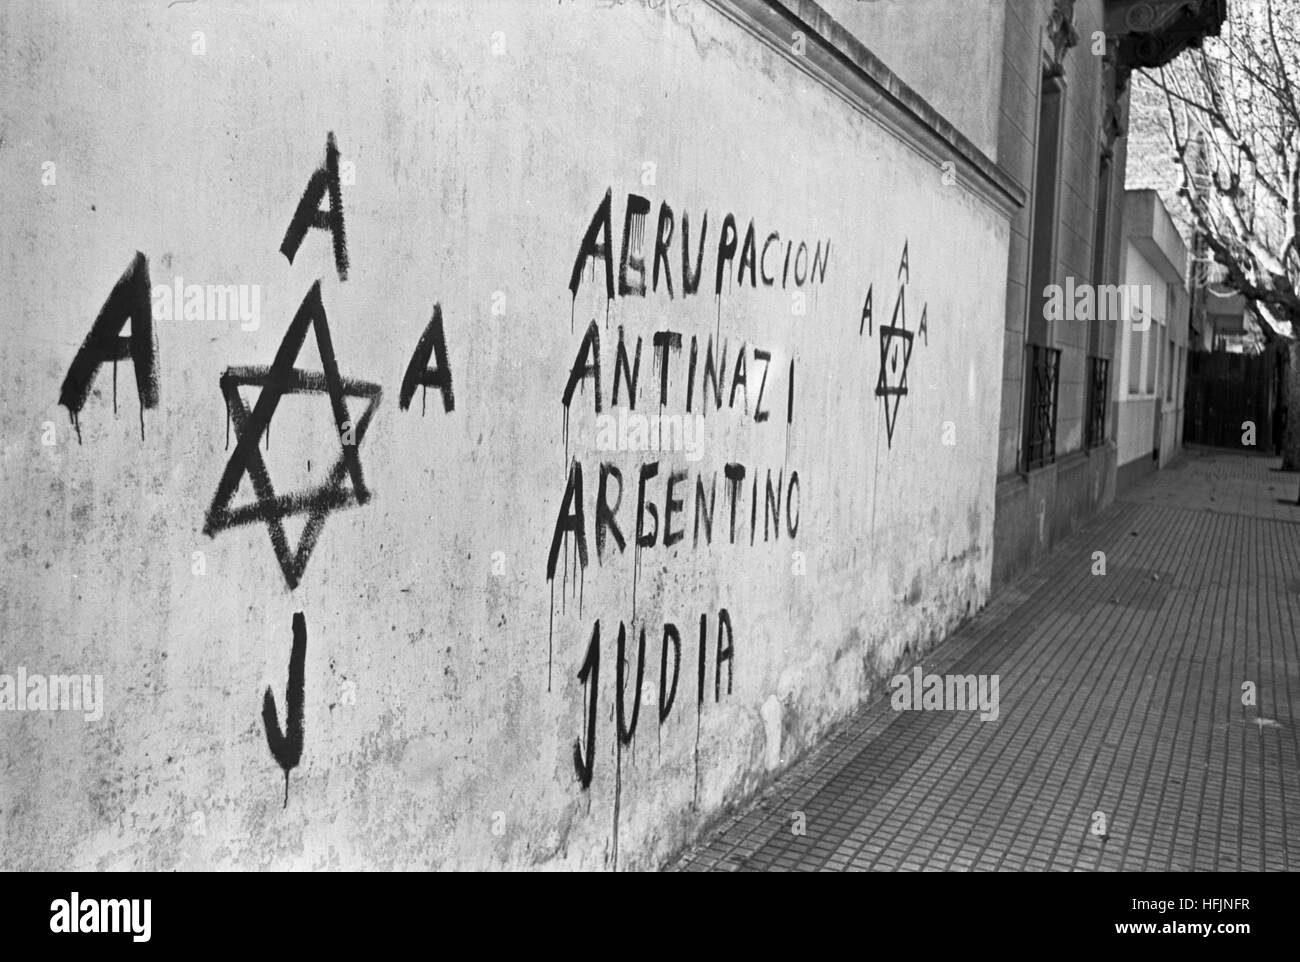 Anti-Nazi-Graffiti in Buenos Aires, Argentinien, 1962. Weit-Rechte Gruppen hatten Hakenkreuze rund um Buenos Aires, Malerei, verursacht offenbar Anti-Nazi-Graffiti als Antwort angezeigt werden. Stockfoto